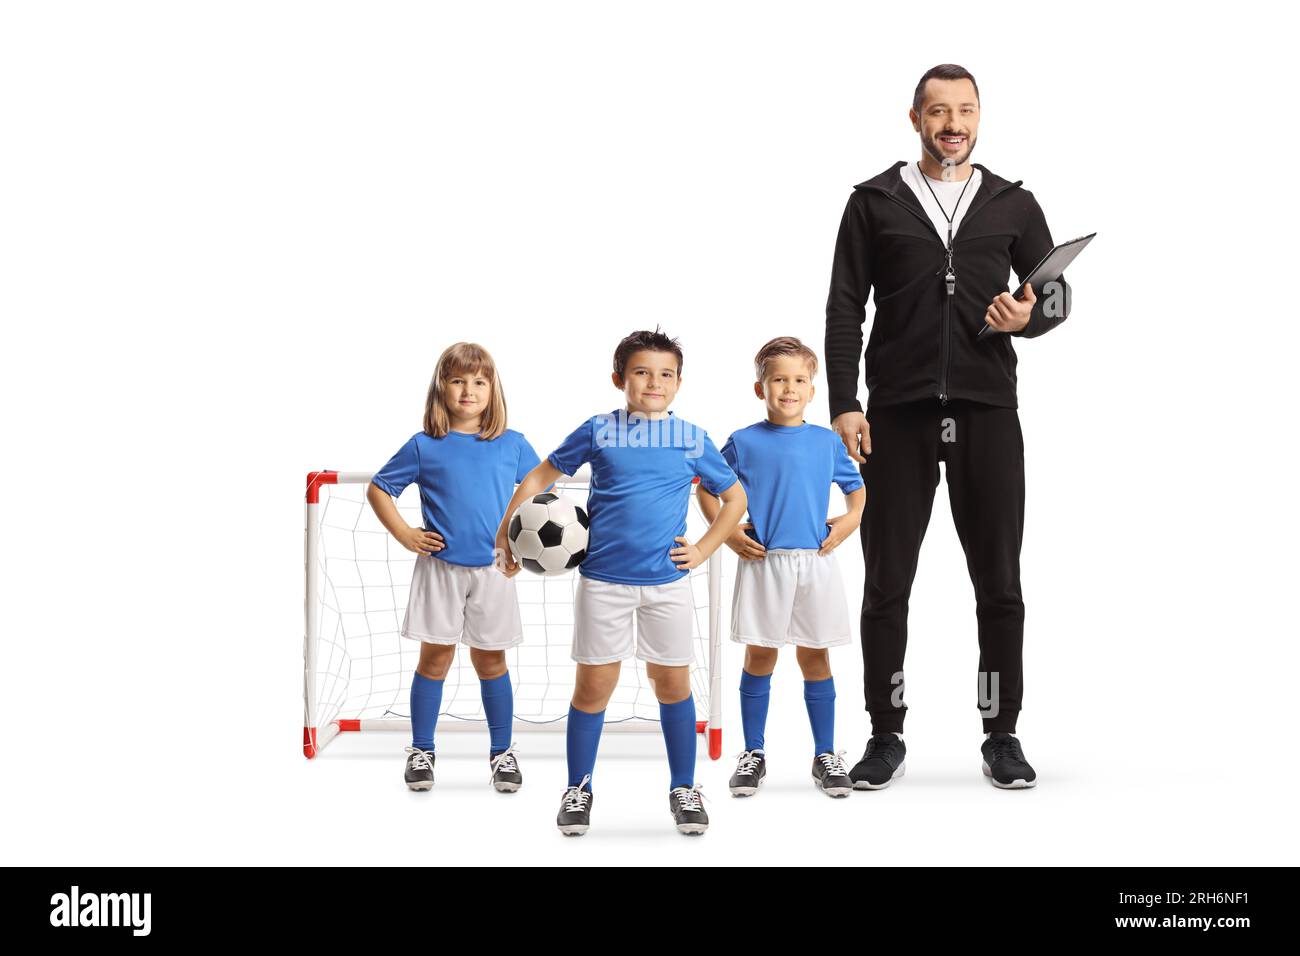 Gruppe von Kindern, die mit einem Fußballtrainer posieren, isoliert auf weißem Hintergrund Stockfoto